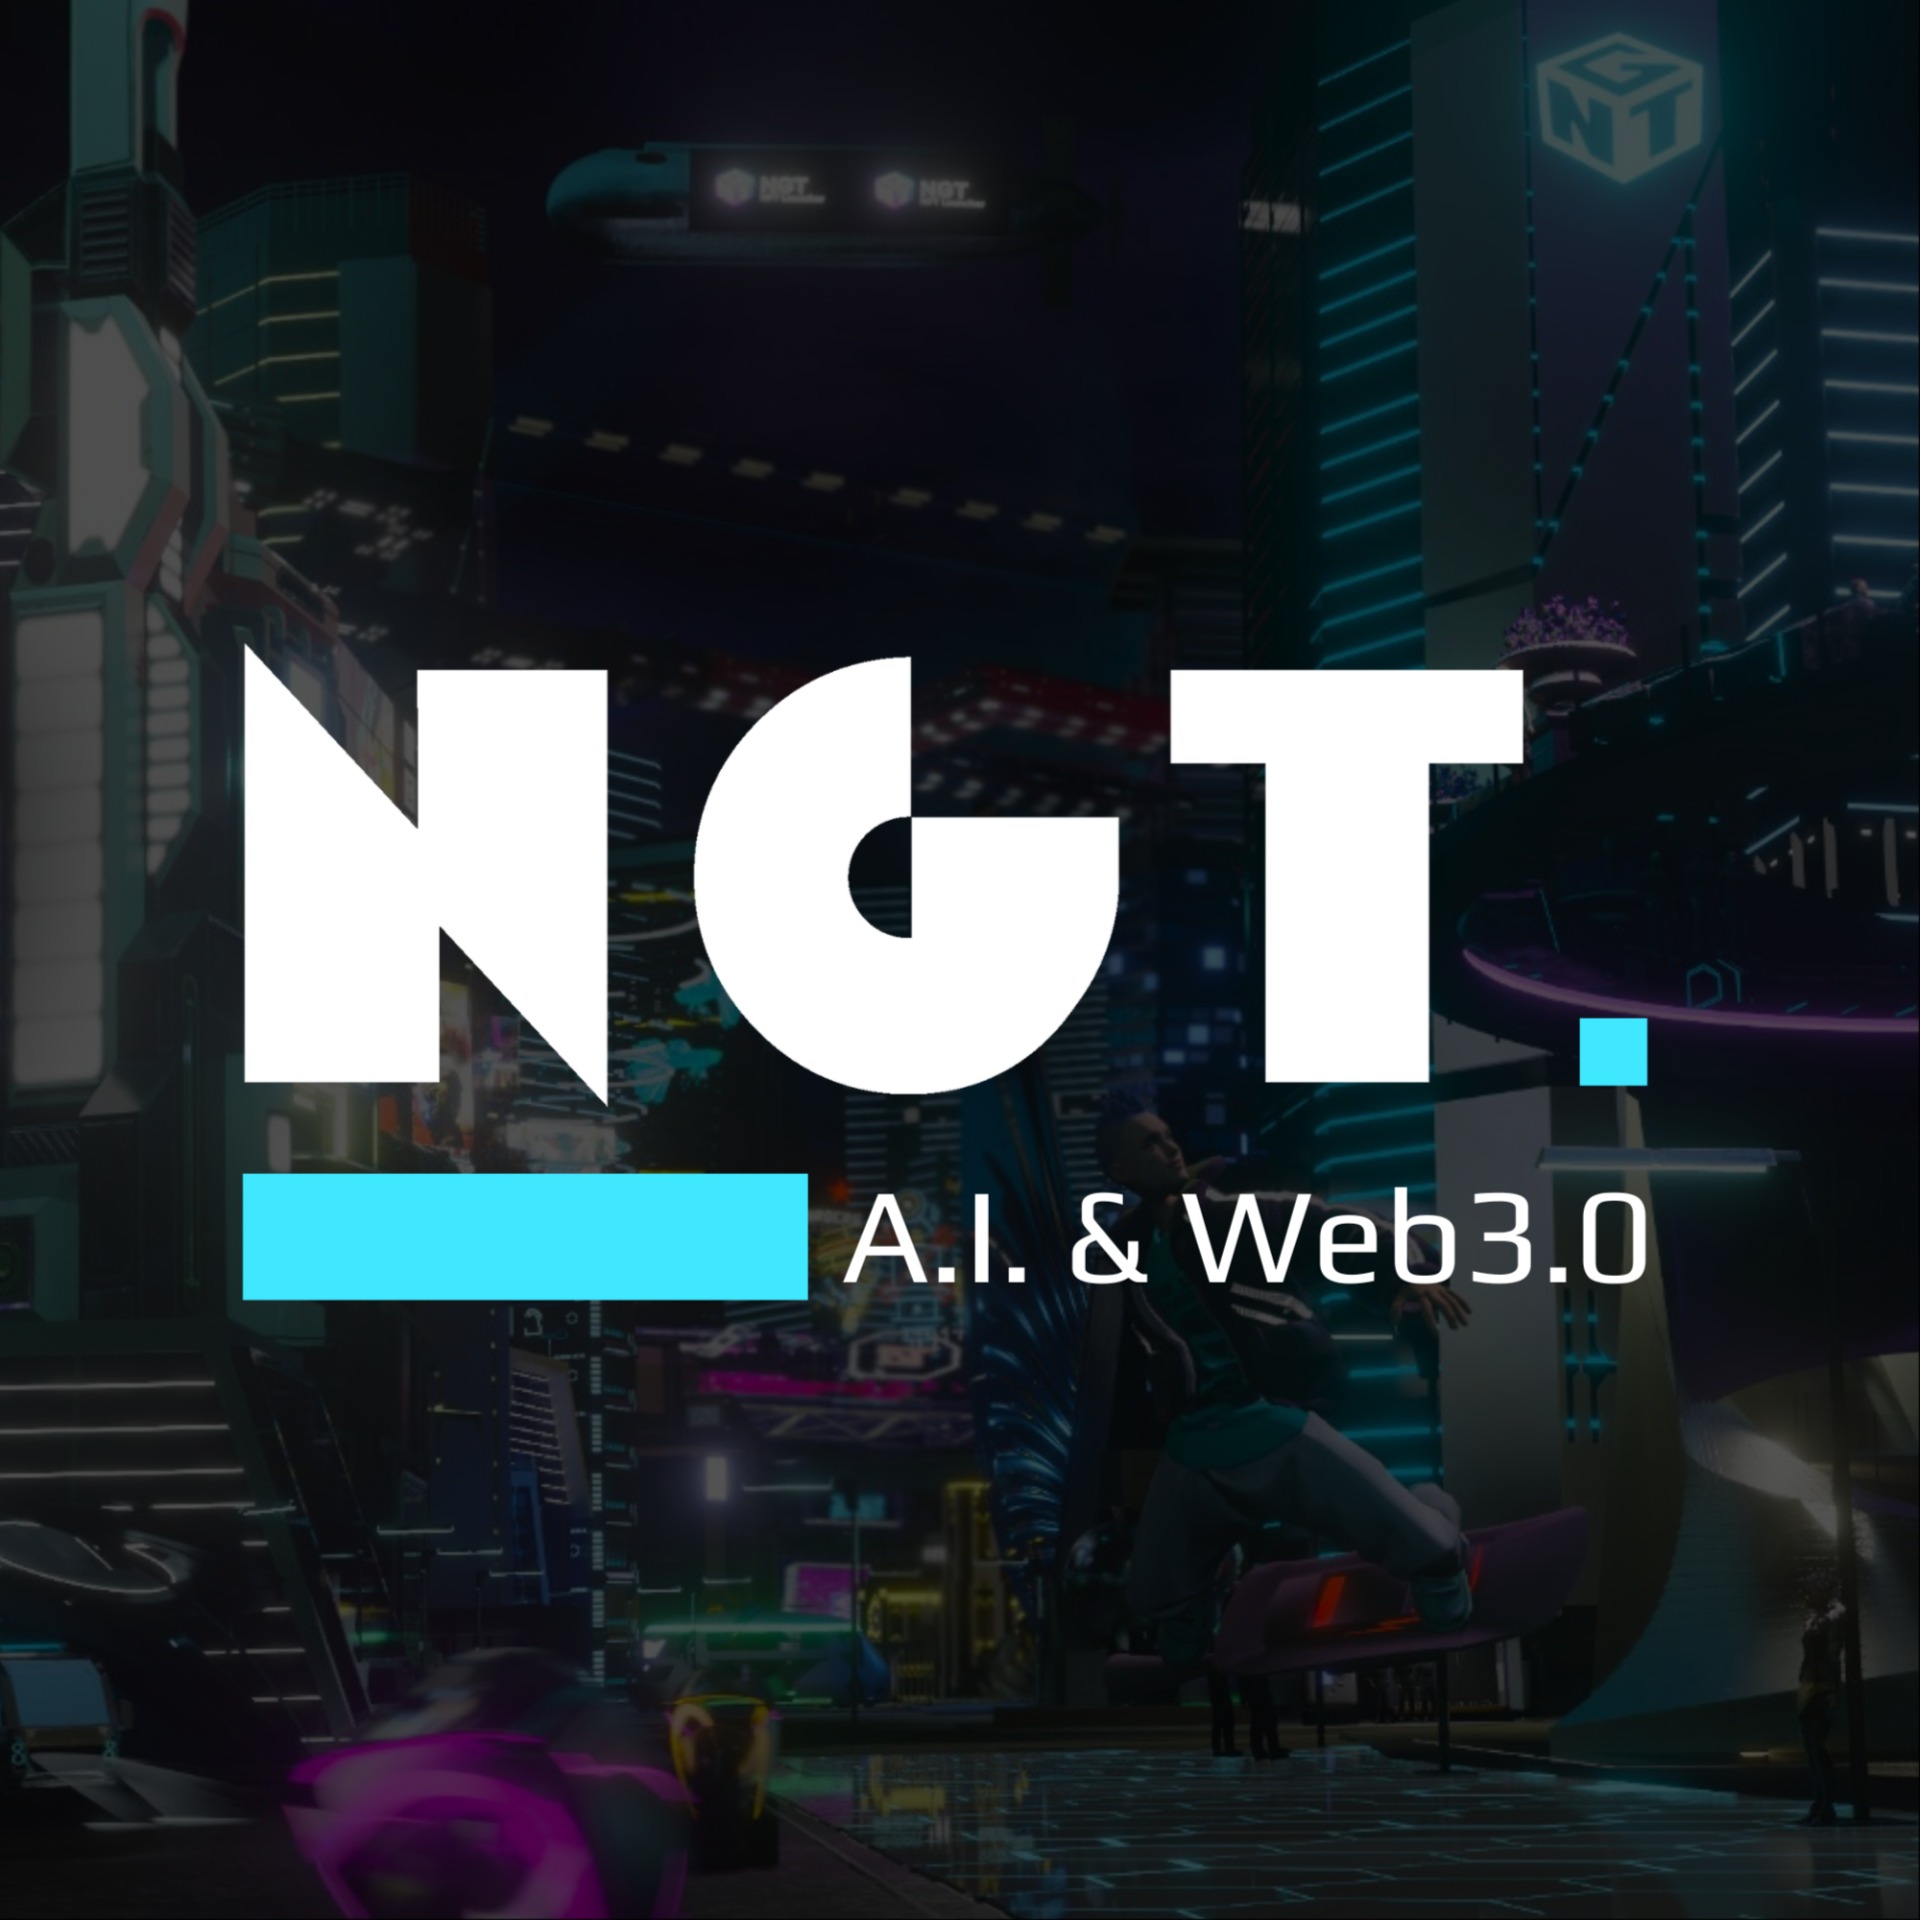 Next Gen Tech一站式網頁/APP設計開發 | A.I. & WEB3